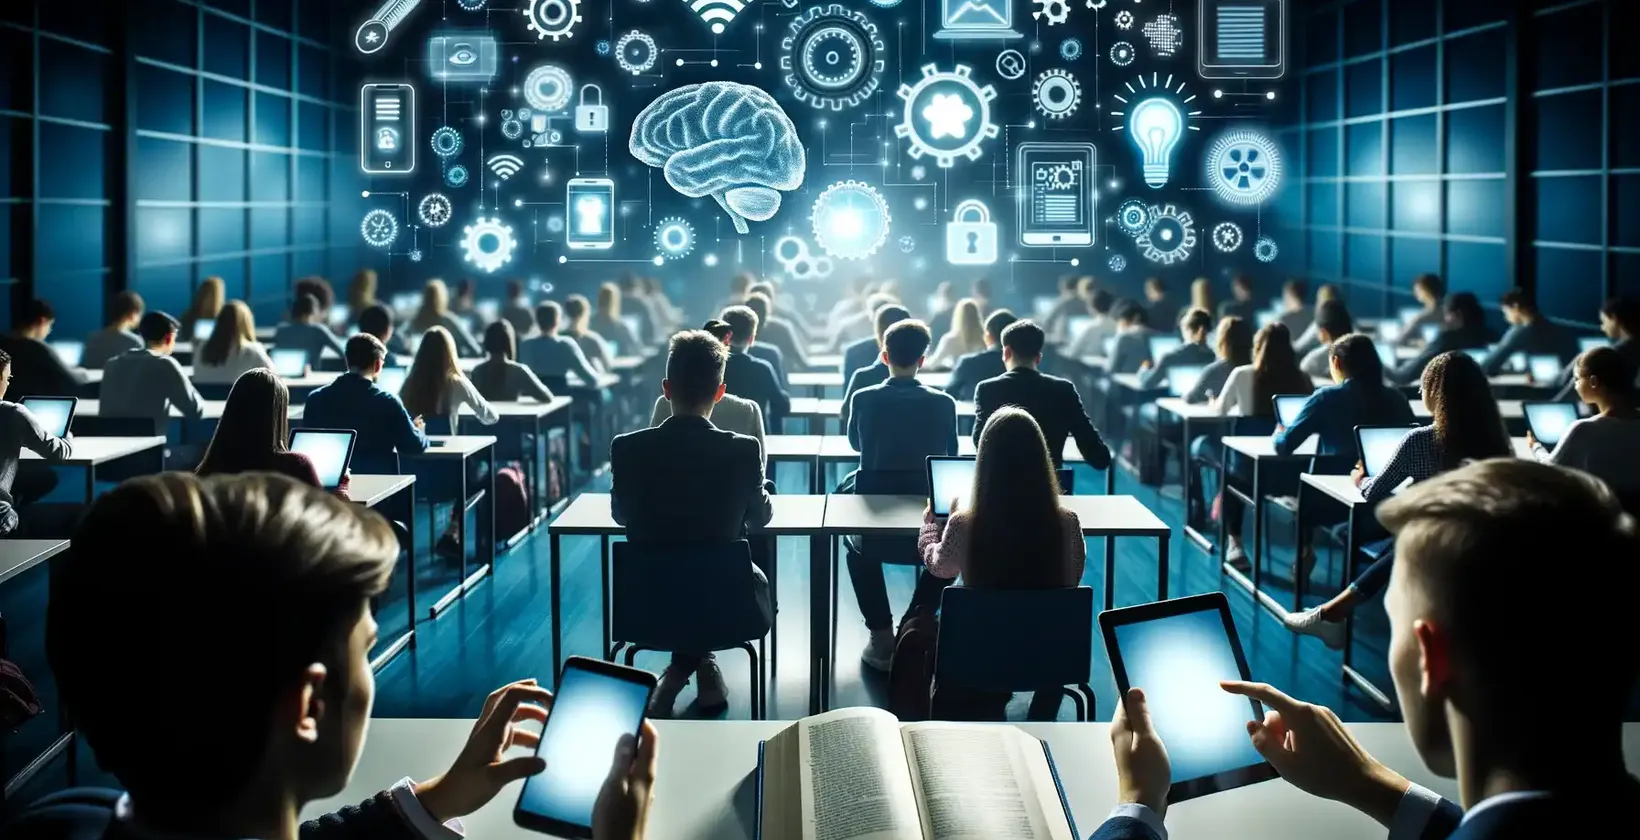 Un folto gruppo di studenti in un'aula futuristica, ciascuno dotato di computer portatili e tablet.